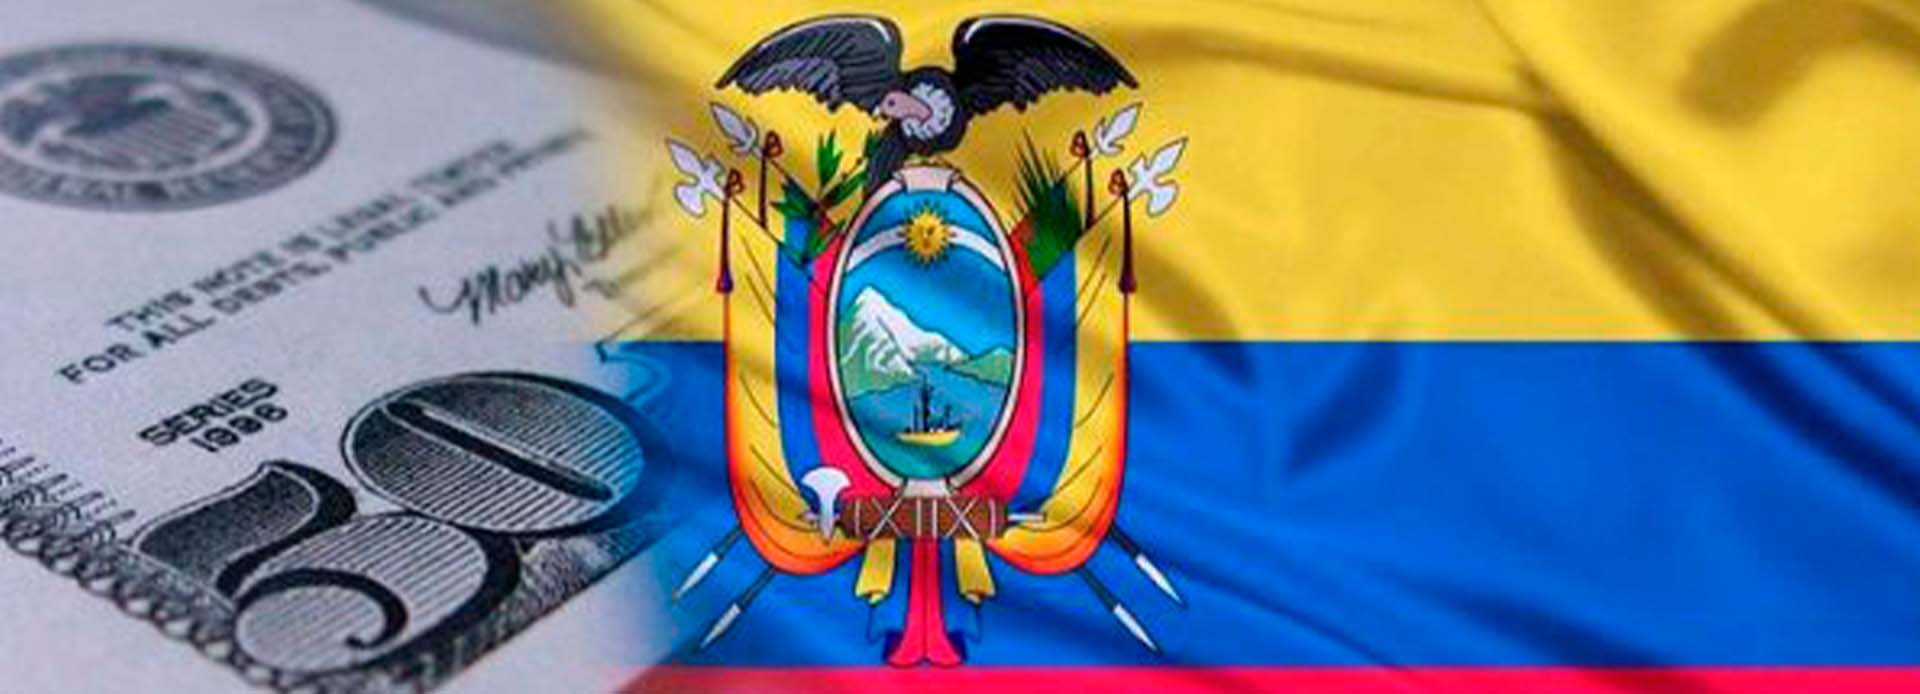 FMI ECUADOR